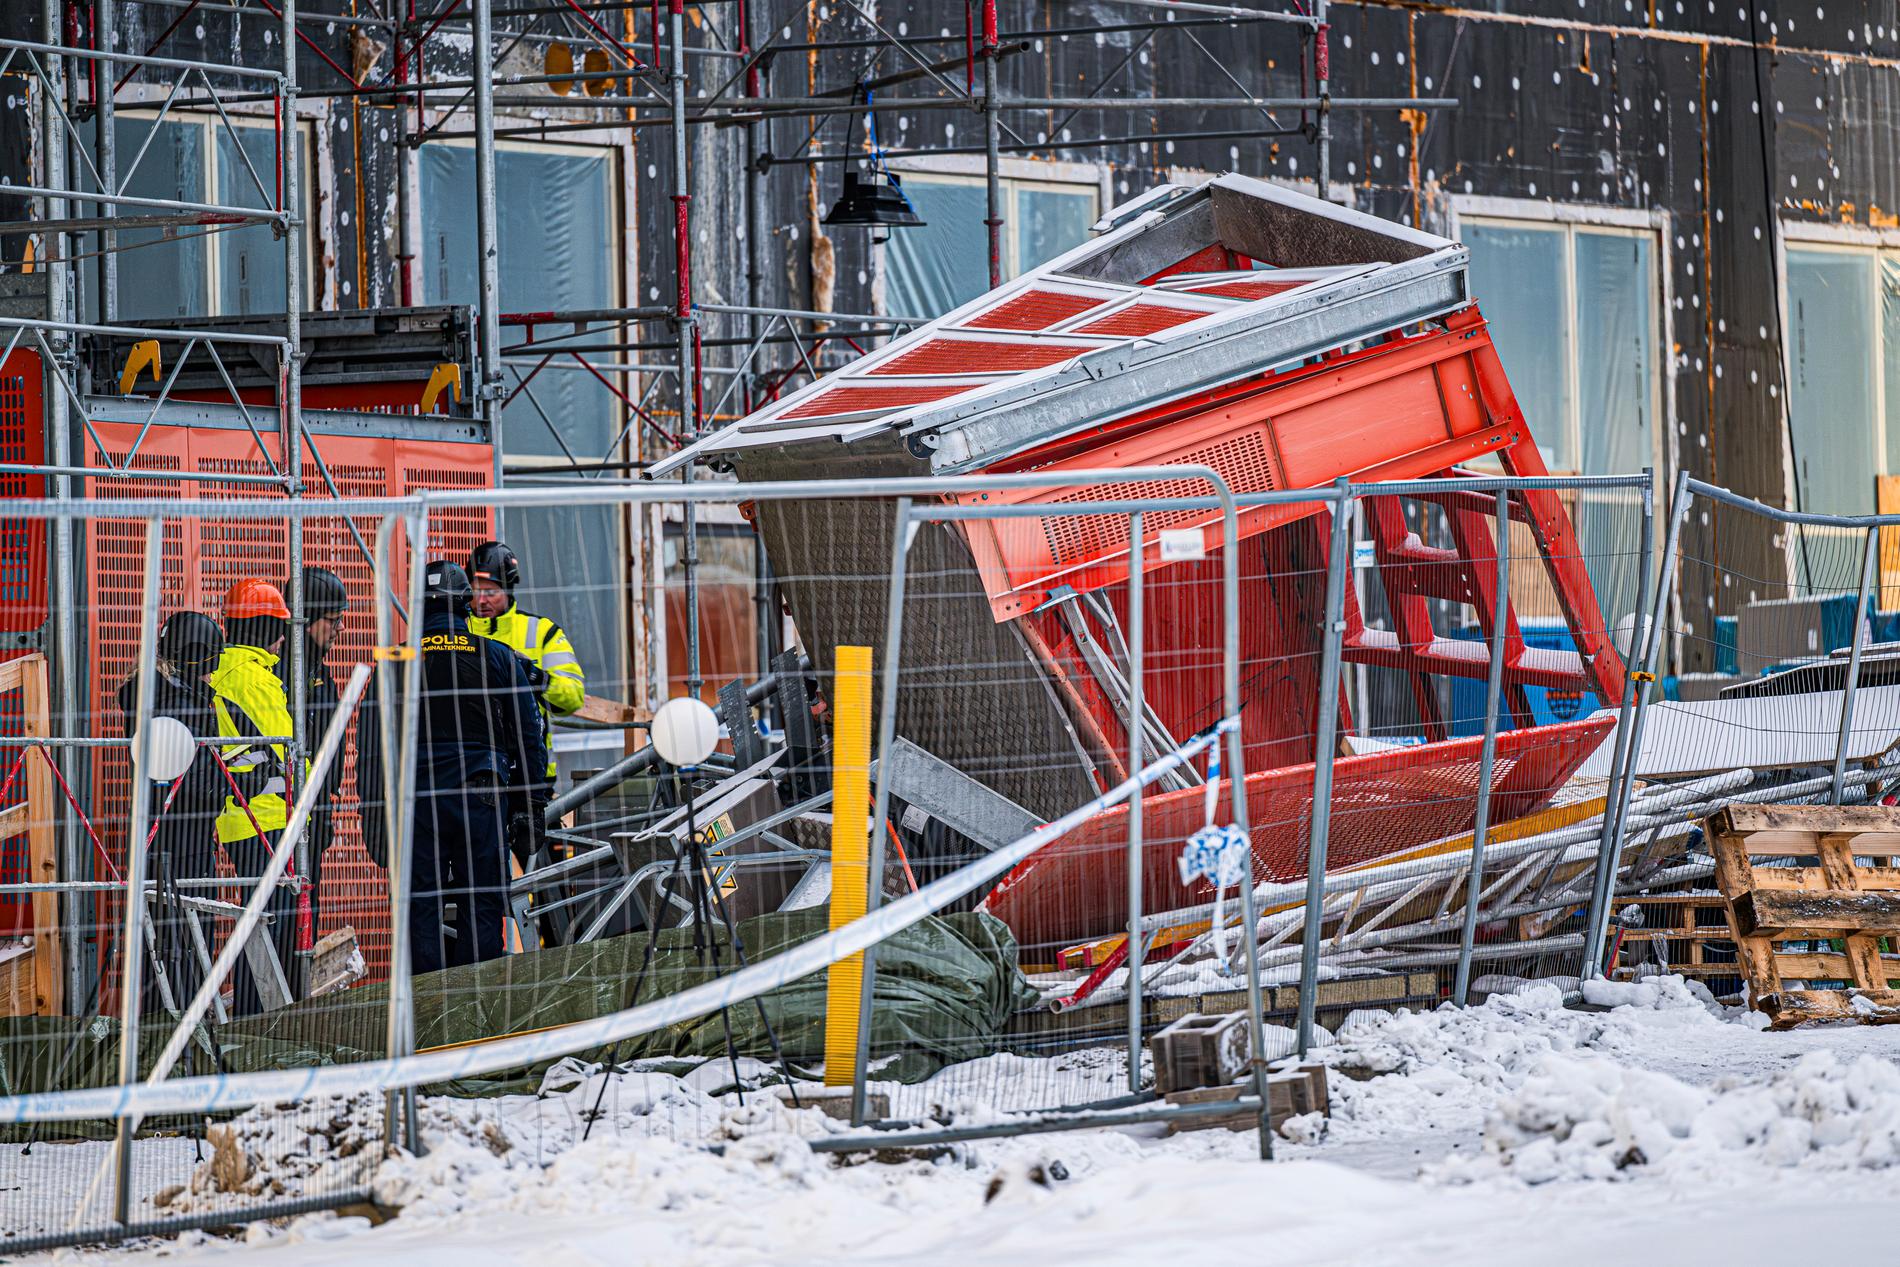 Polisens kriminaltekniker under tisdagen vid olycksplatsen i Ursvik i Sundbyberg där fem män omkom i en hissolycka i måndags.